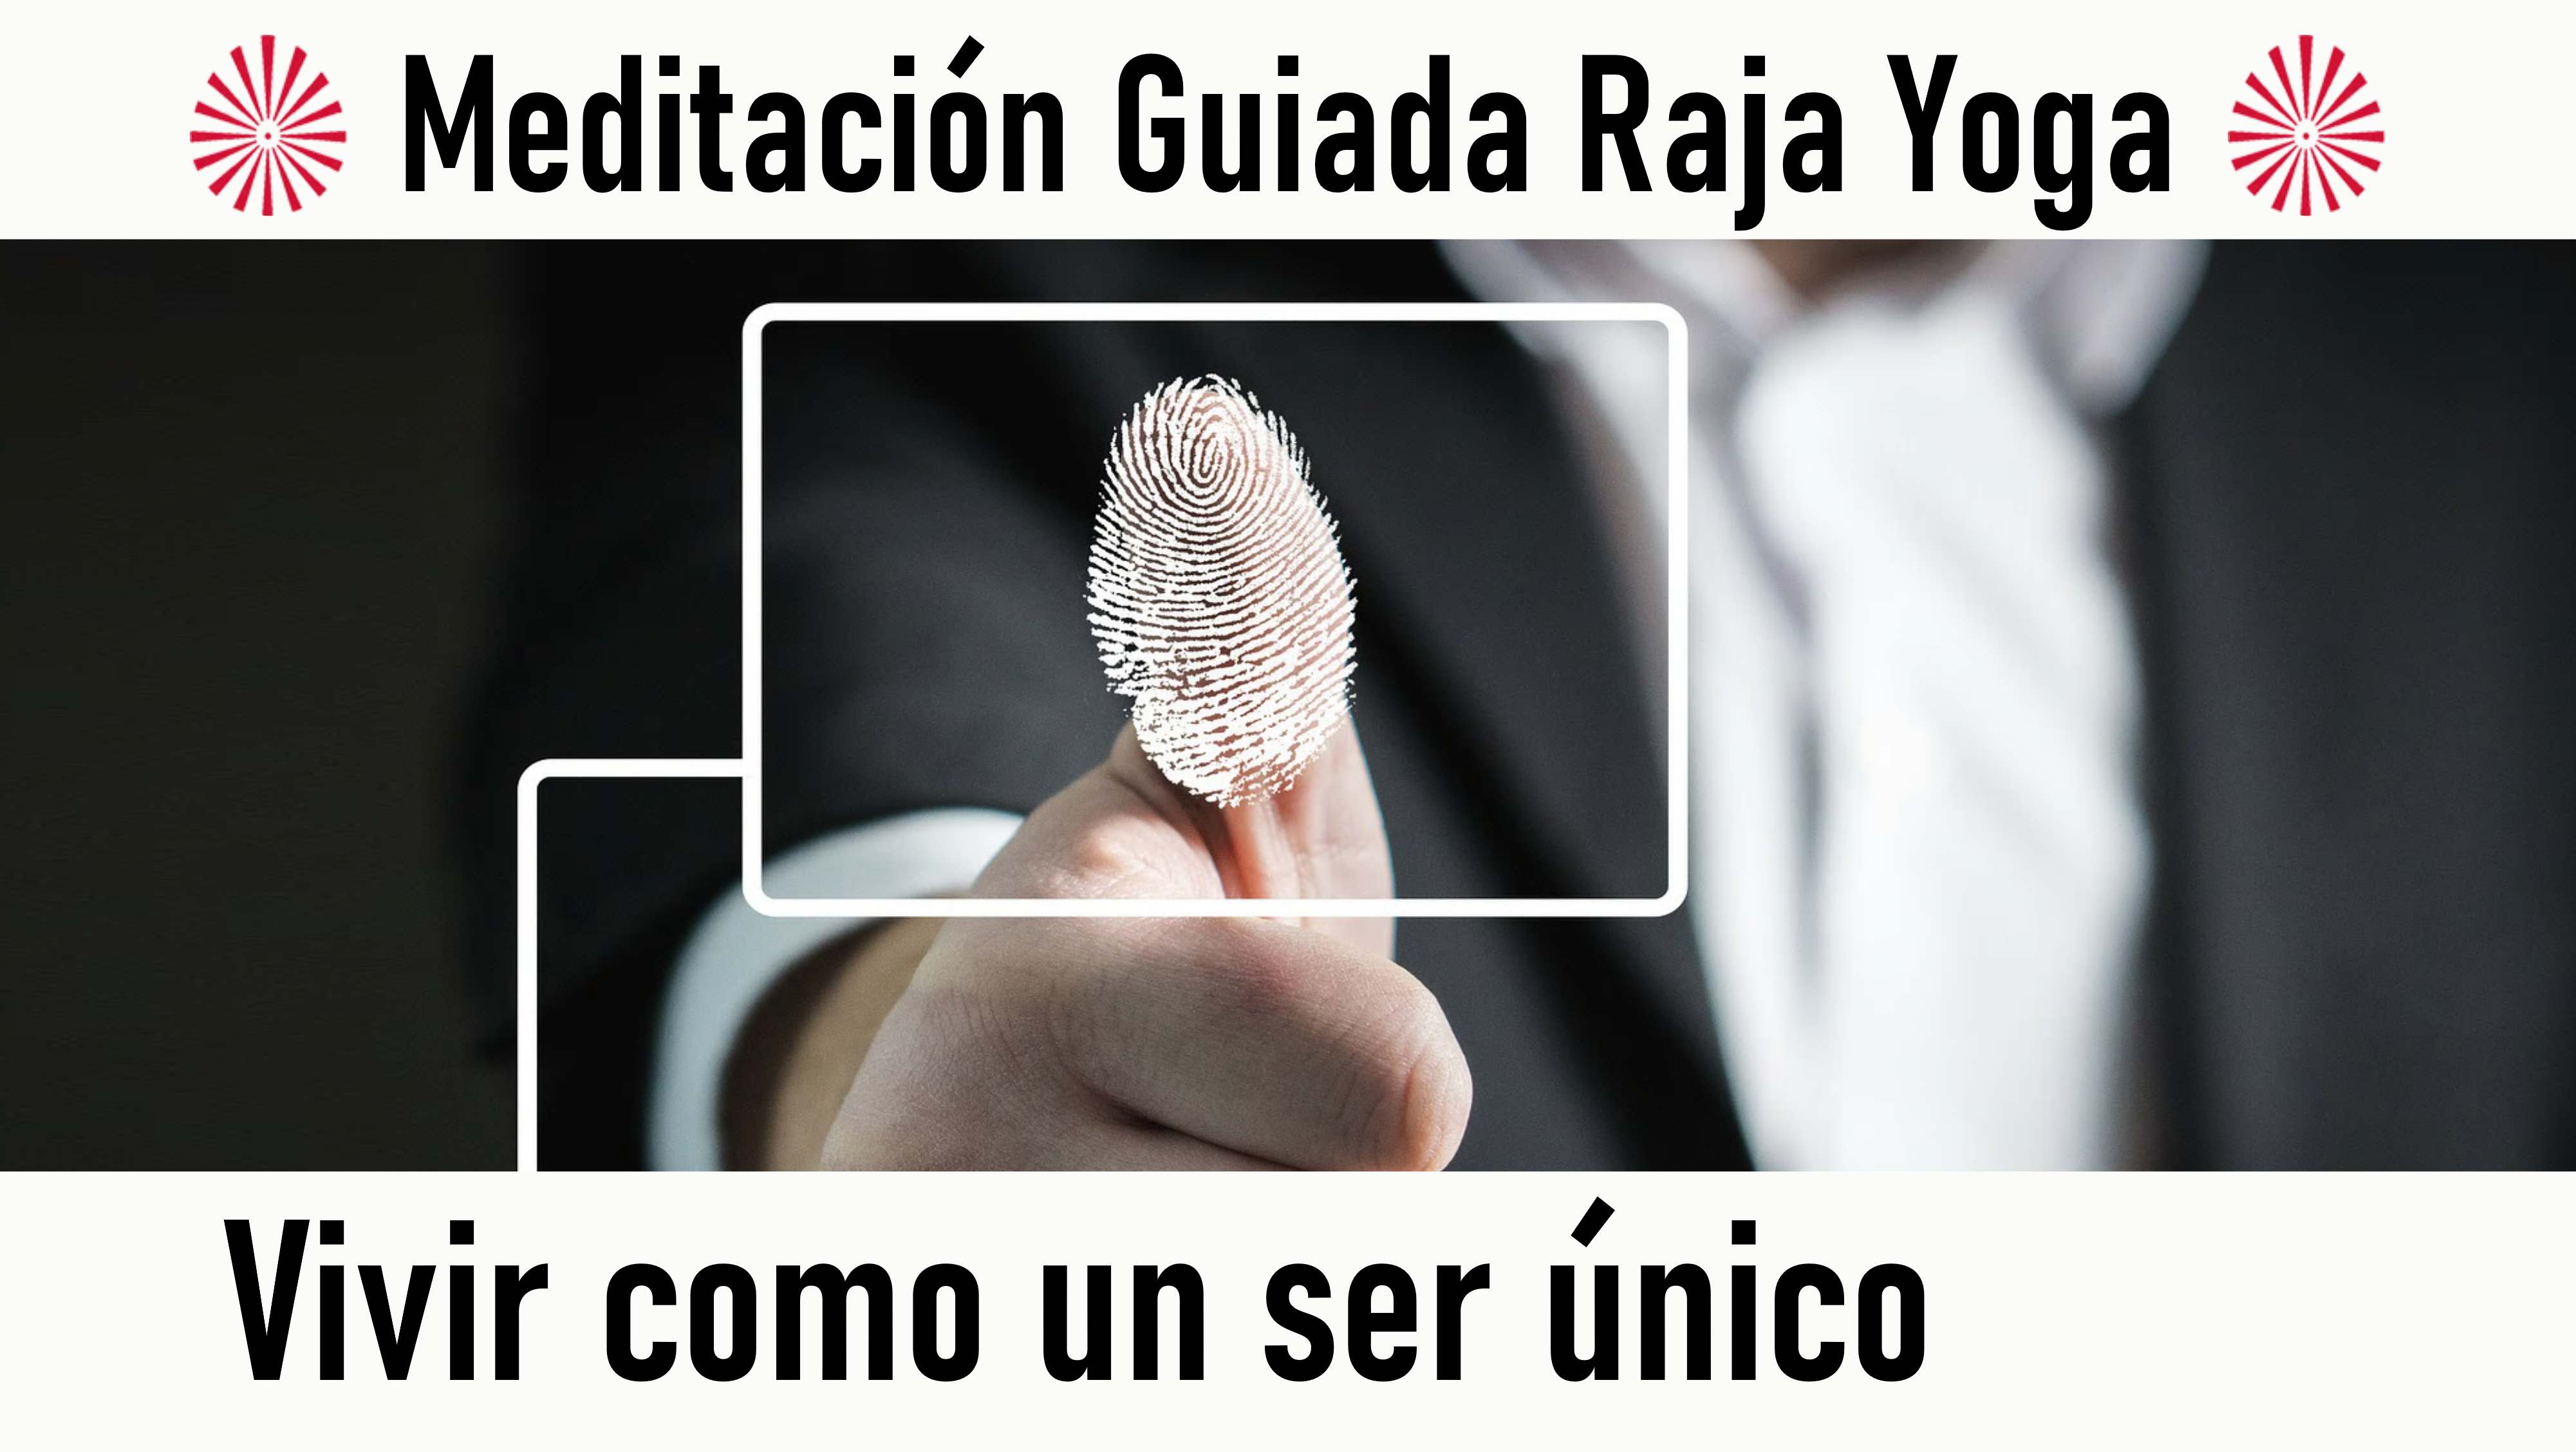 Meditación Raja Yoga: Vivir como un ser único (17 Agosto 2020) On-line desde Madrid